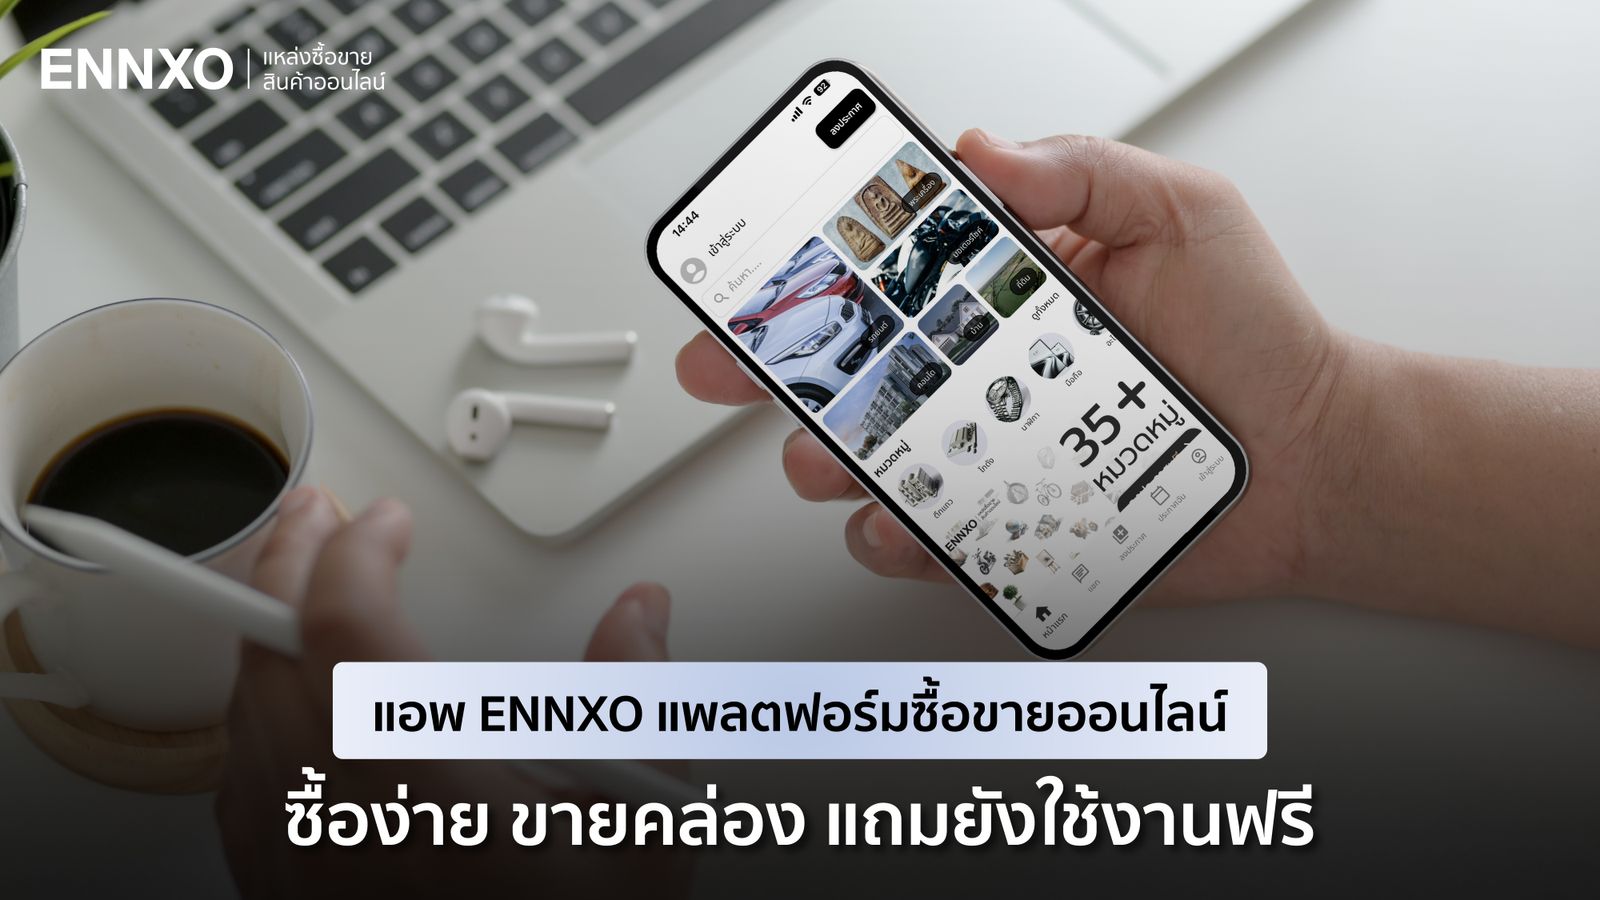 แอพ ENNXO แพลตฟอร์มซื้อขายสินค้าออนไลน์ ที่มีให้เลือกซื้อและลงขายกว่า 30 หมวด